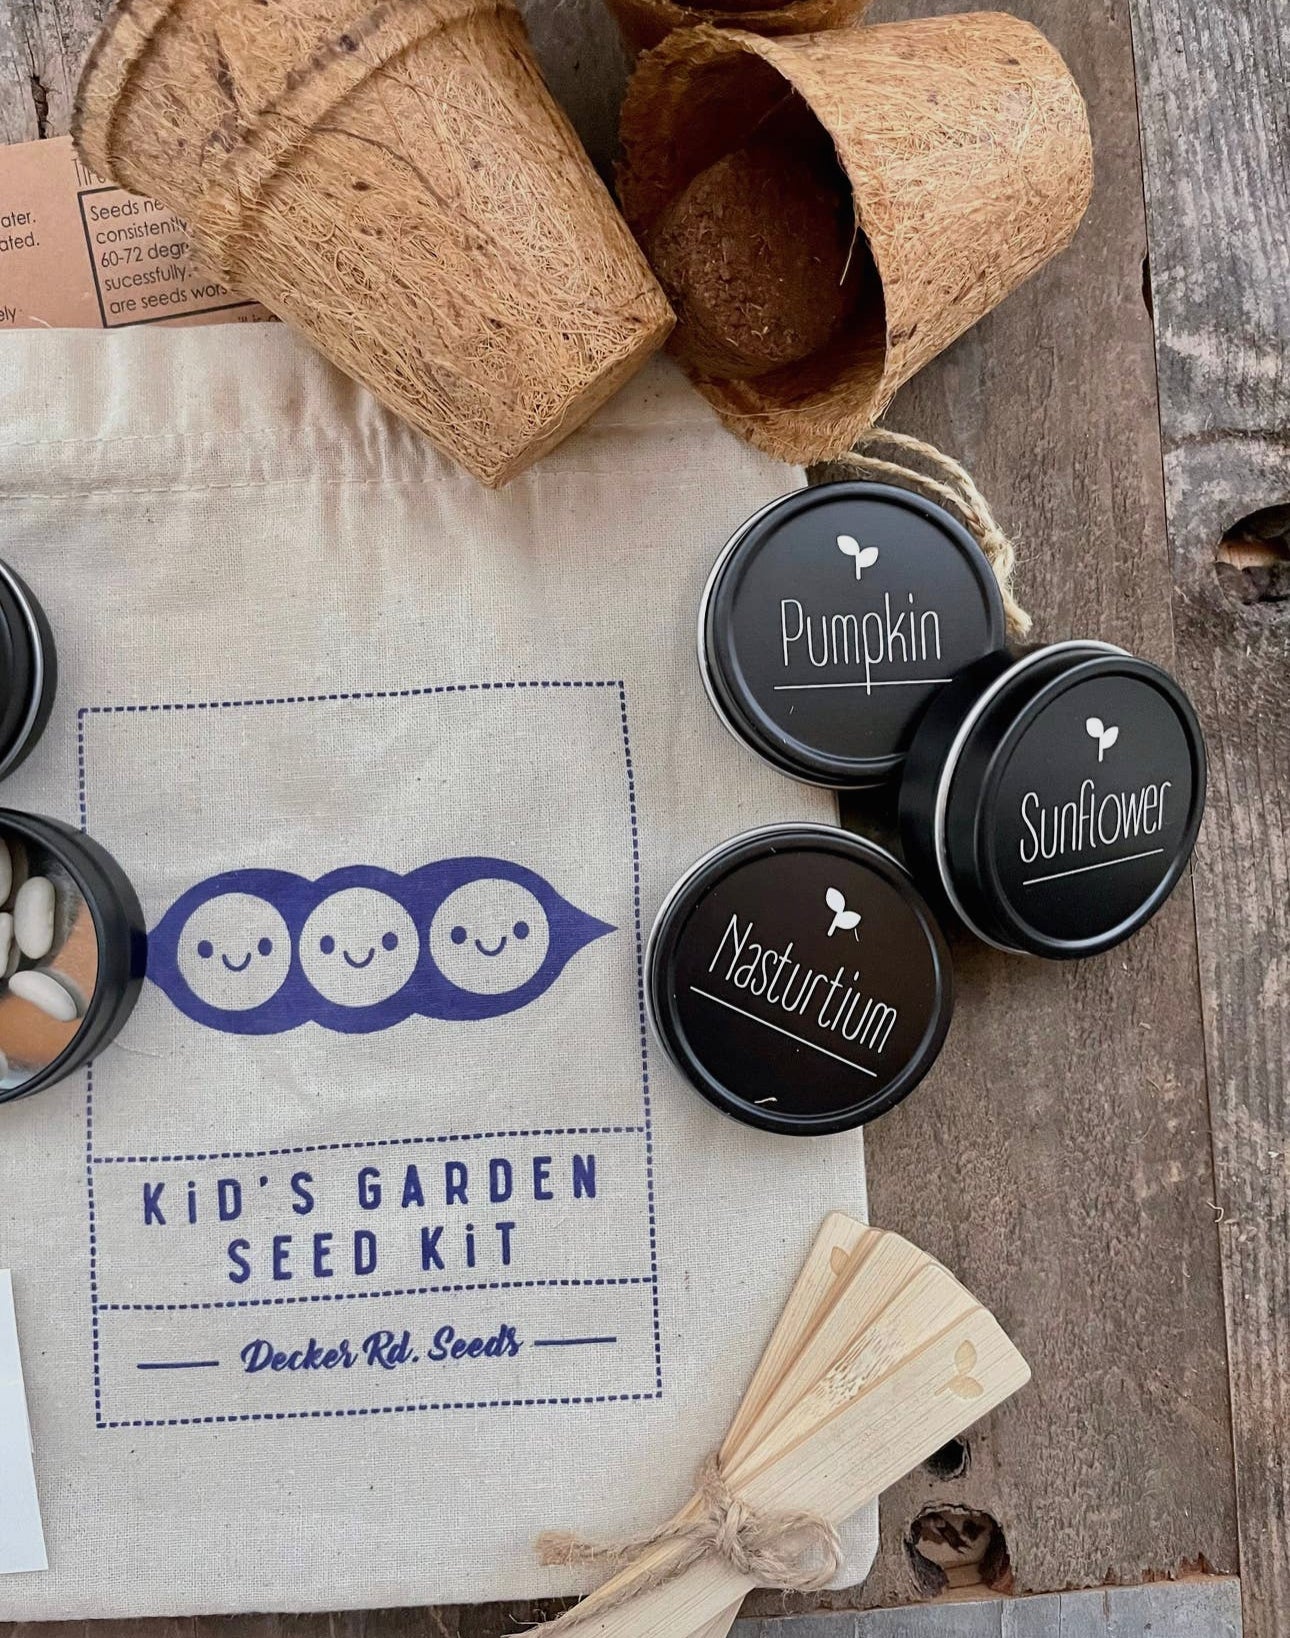 Kids Garden Kit